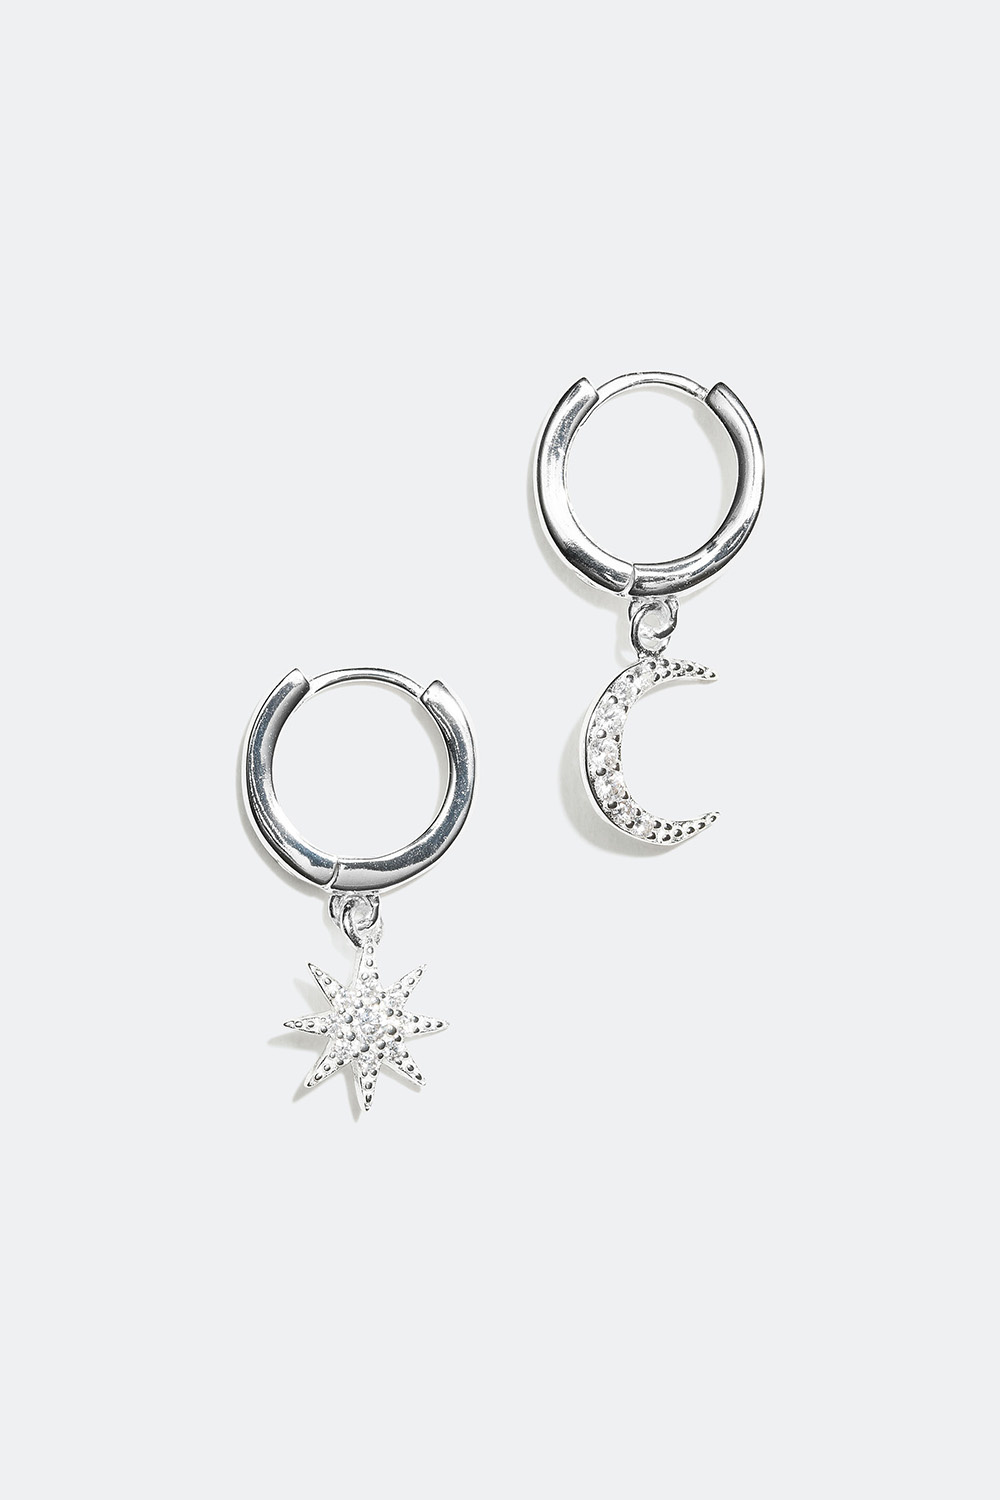 Hoops med hänge i form av måne och stjärna, äkta silver, 1 cm